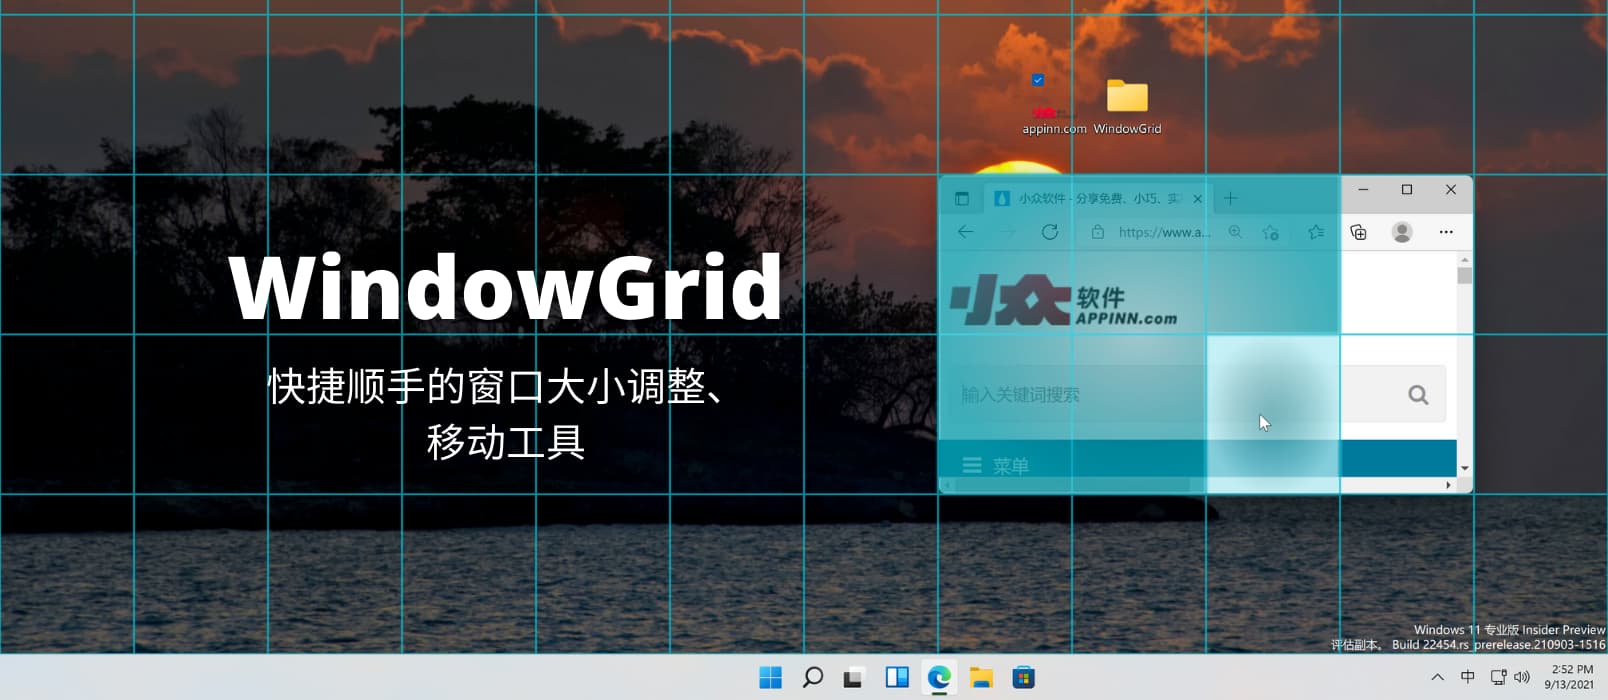 WindowGrid - 快捷顺手的调整窗口大小、移动窗口工具[Windows]